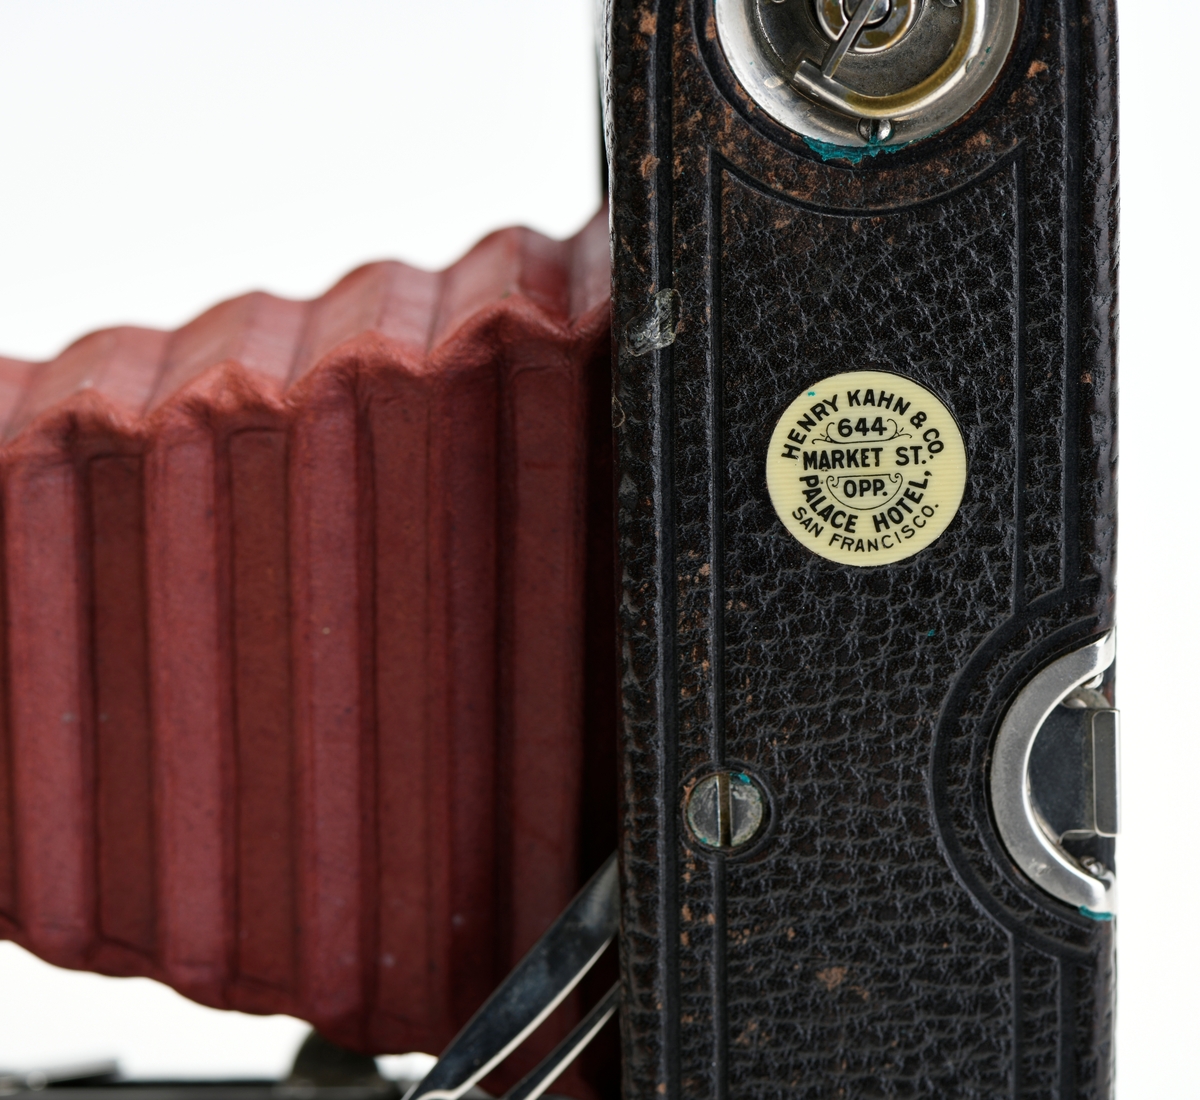 Et belgkamera for 116-film fra Kodak. No. 1A Folding pocket ble laget i flere versjoner mellom 1899 og 1915 og var det første kameraet fra Kodak til å bruke 116-film. Av de fire versjonene (Model A, B, C, D) var denne Model D den første til å ha en objektivplate i metall, mens de tidligere versjonene hadde en objektivplate i tre. 

Kameraet tar bilder på 6,5x11 cm. Det har 3 lukkertider i tillegg til åpen lukker (B). I tillegg til lukkeren på objektivet har kameraet også en snorutløser. På skinnen som belgen er festet i er det et lite hjul for å stoppe belgen i ulike posisjoner merket med fokusavstand. Det er en søker foran på objektivplaten som kan roteres for å ta landskapsbilder, og søkeren har et deksel som kan vippes opp. Baksiden kan åpnes for å sette inn film, og det har et rødt vindu for å se om det er film i. Luken til belgen åpnes med en knapp på siden av kameraet, på luken er det en fot som kan brettes ut. Håndtak i skinn på toppen. Kameraet kommer i en veske av skinn. Med kameraet følger også en mekanisk opptrekkbar selvutløser som kan festes på enden av snorutløseren.